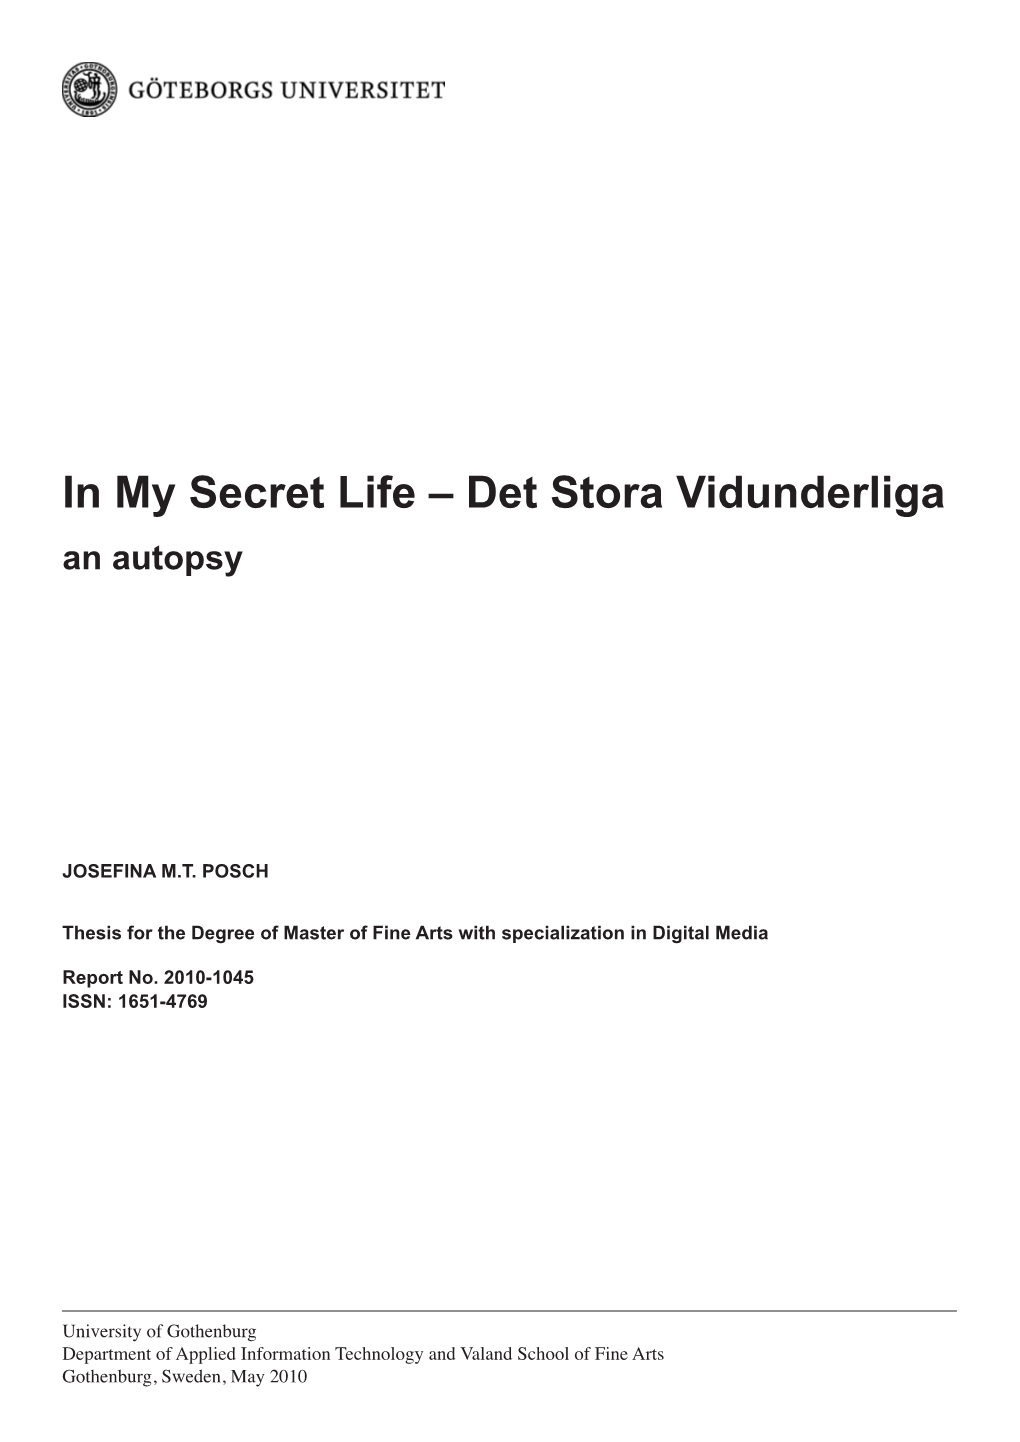 In My Secret Life – Det Stora Vidunderliga an Autopsy